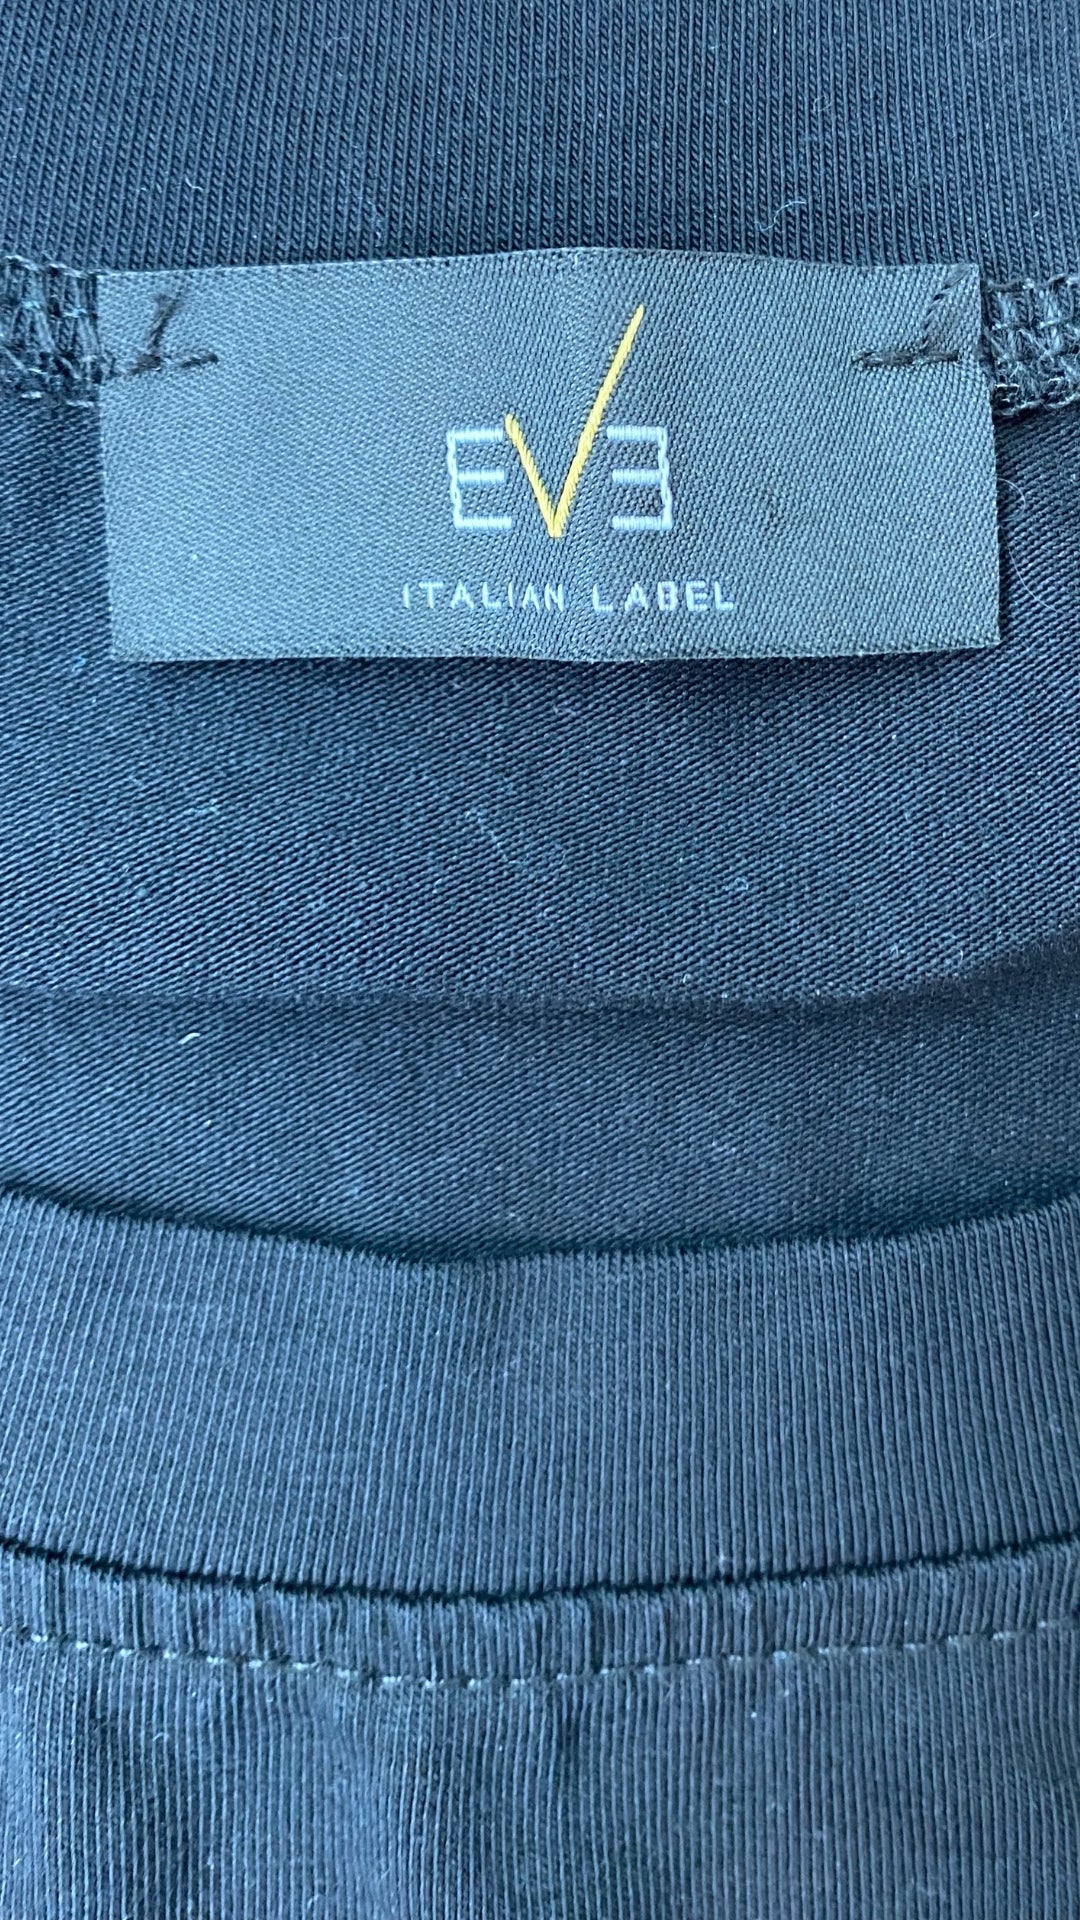 Chandail noir avec encadré à motif Eve Italian Label, taille medium. Vue de l'étiquette de la marque.